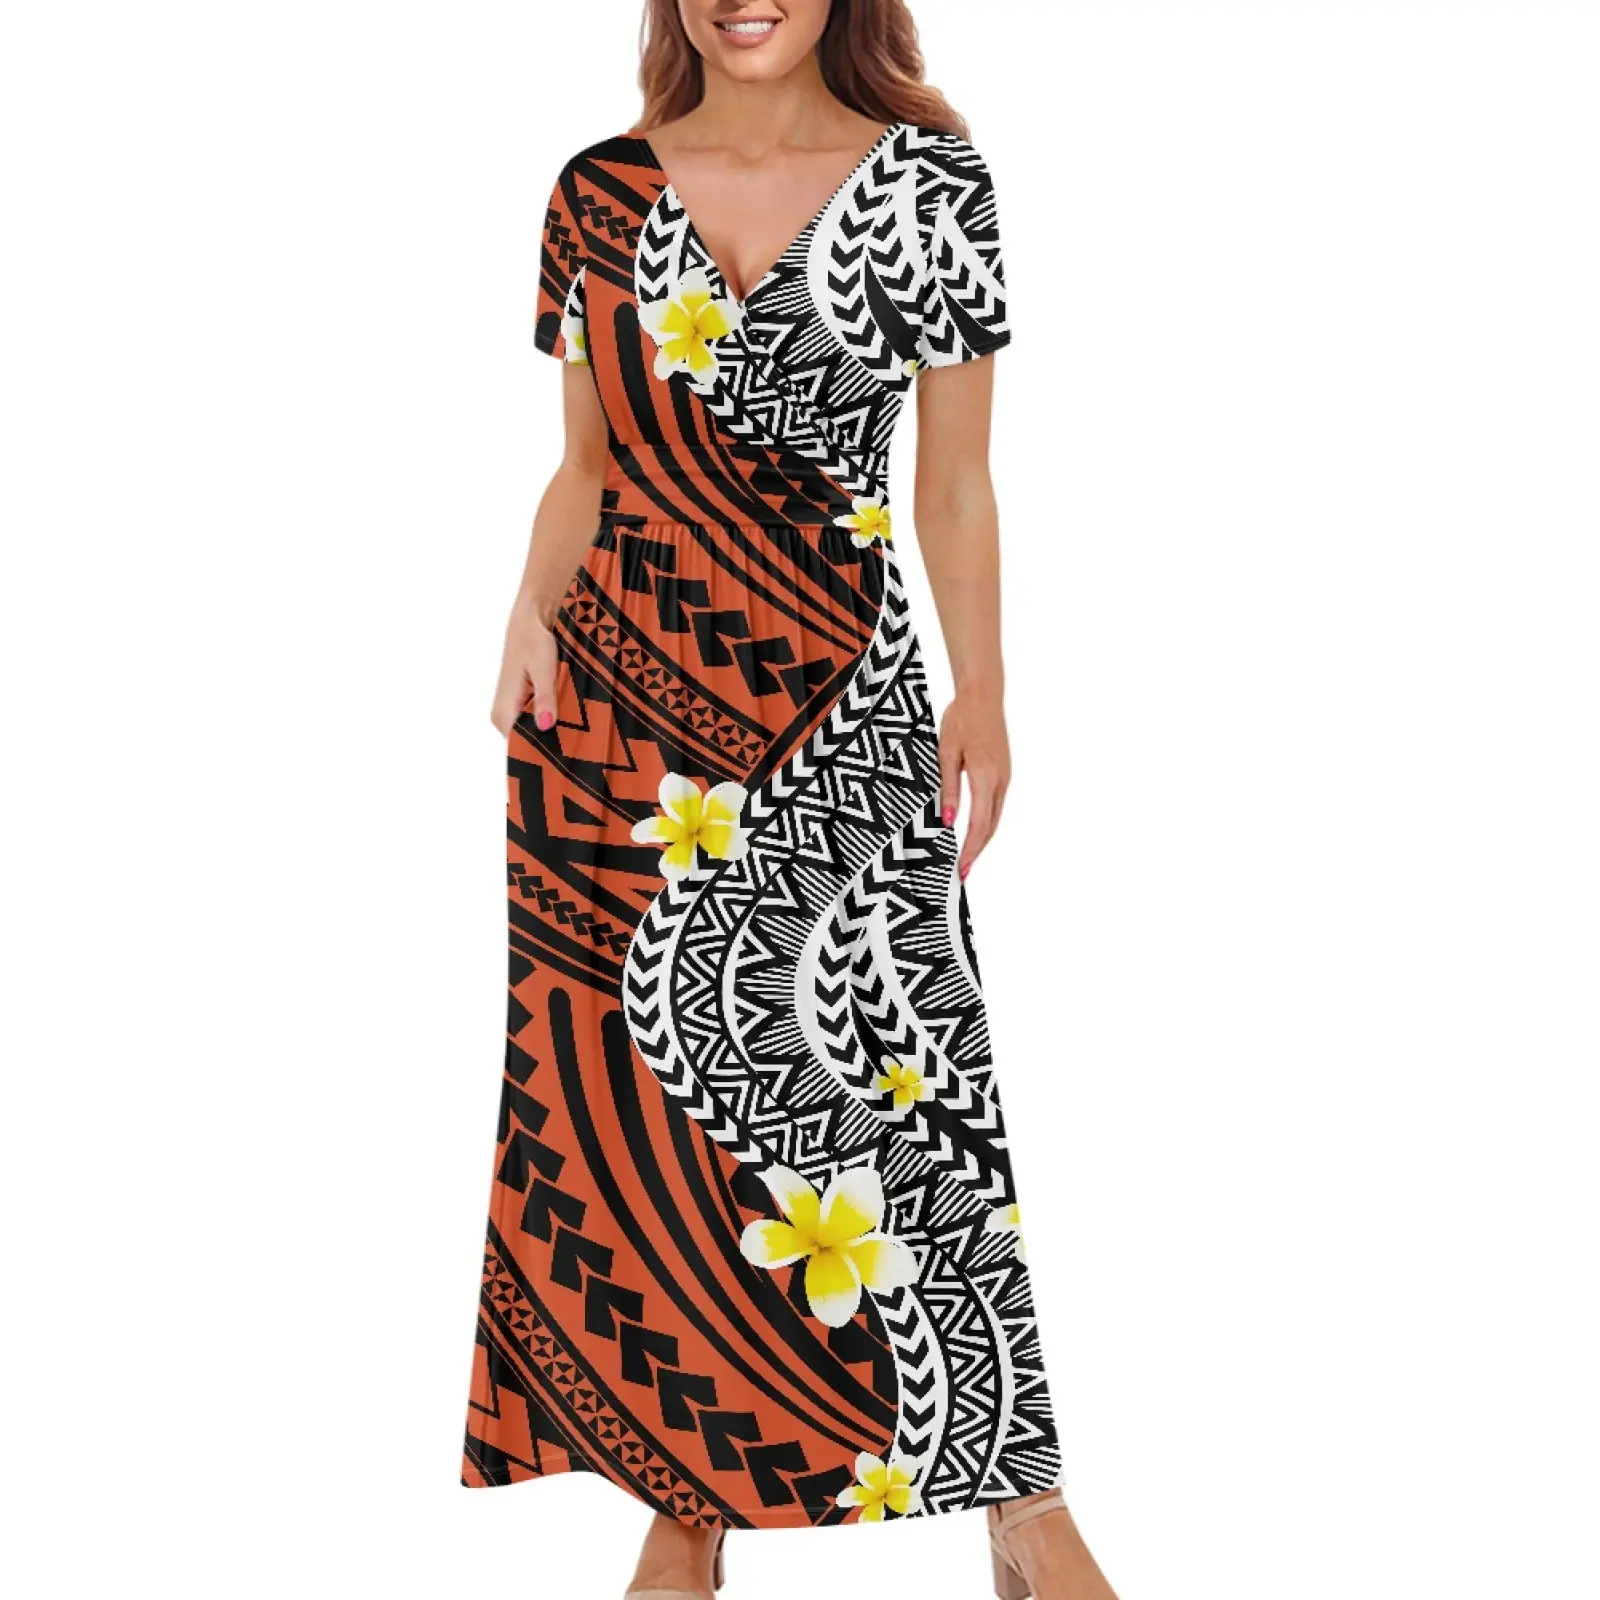 Kadınlar için lüks giysiler High-End artı boyutu Hawaii çiçek baskılı rahat elbise seksi resmi polinezya kabile tasarım özel elbise